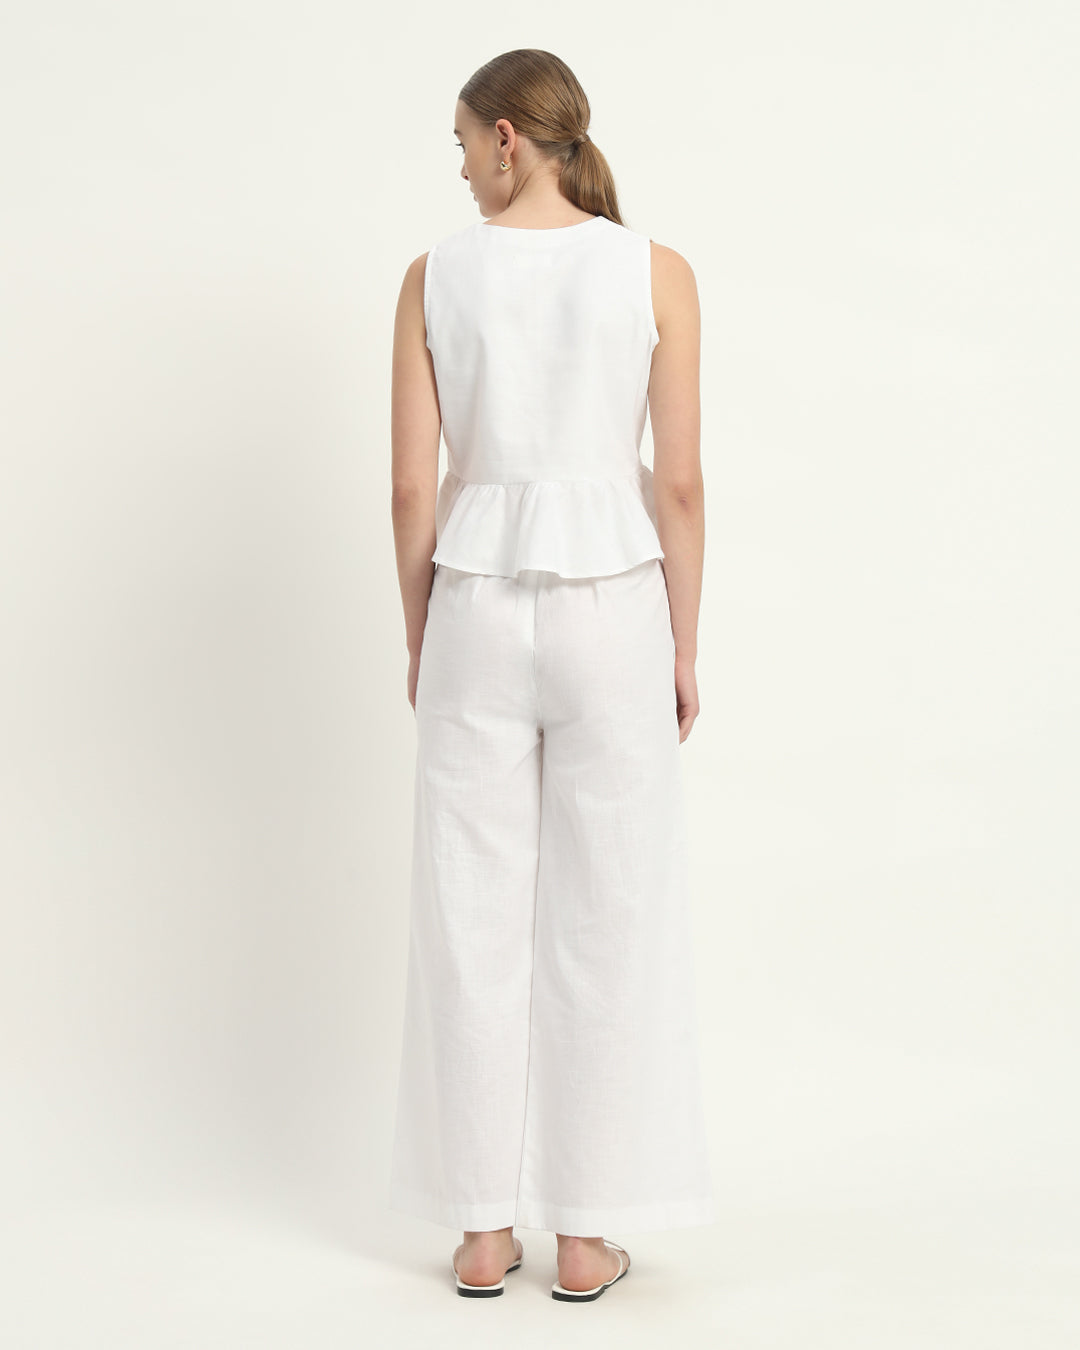 Pants Matching Set- White Linen Posh Peplum